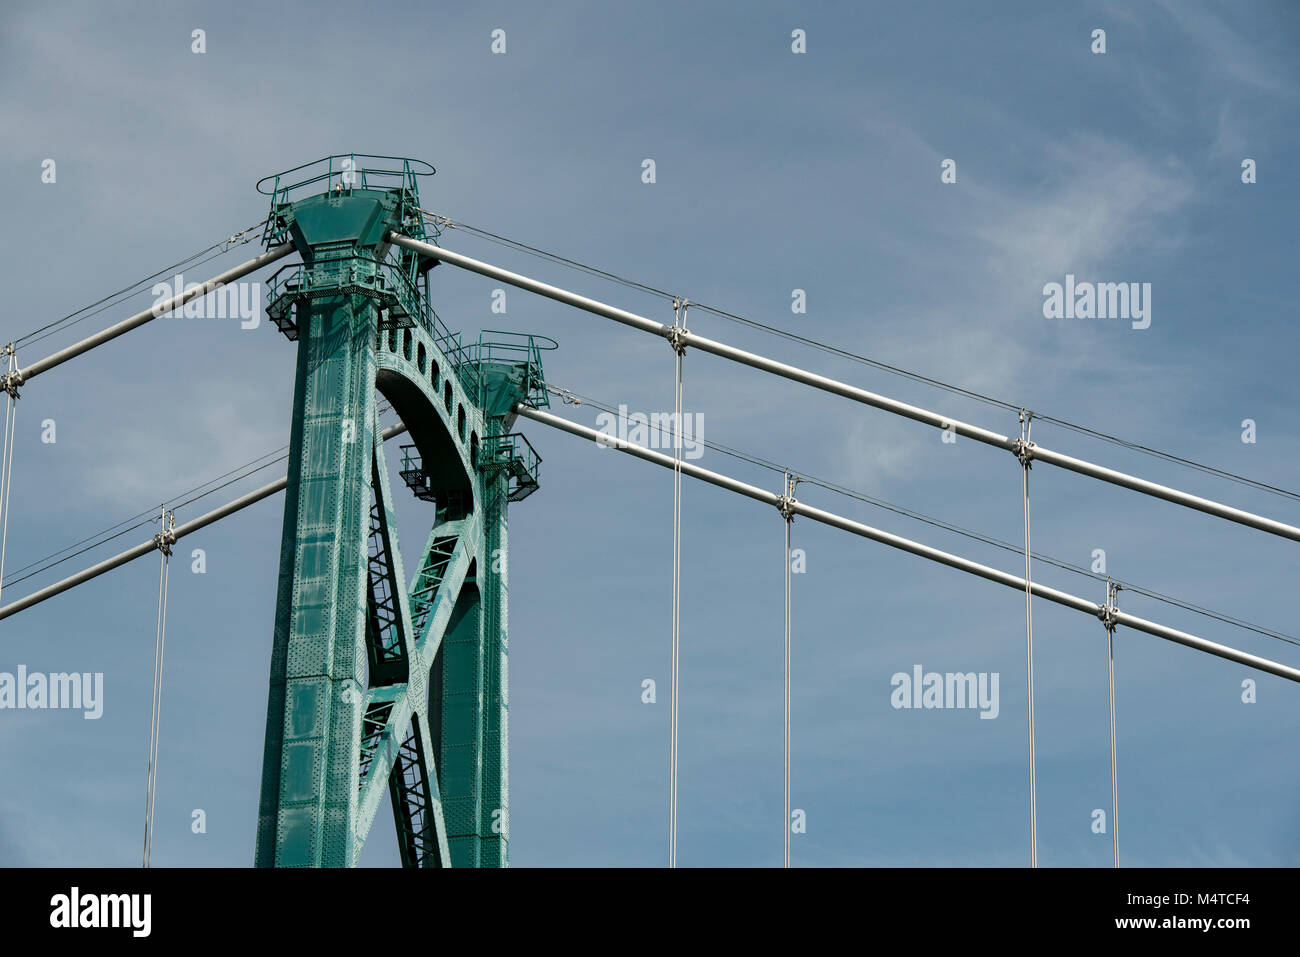 Vancouver, British Columbia, Canada. Ponte Lions Gate, vista ingrandita della parte superiore di una delle due torri con cavi di sospensione. Foto Stock